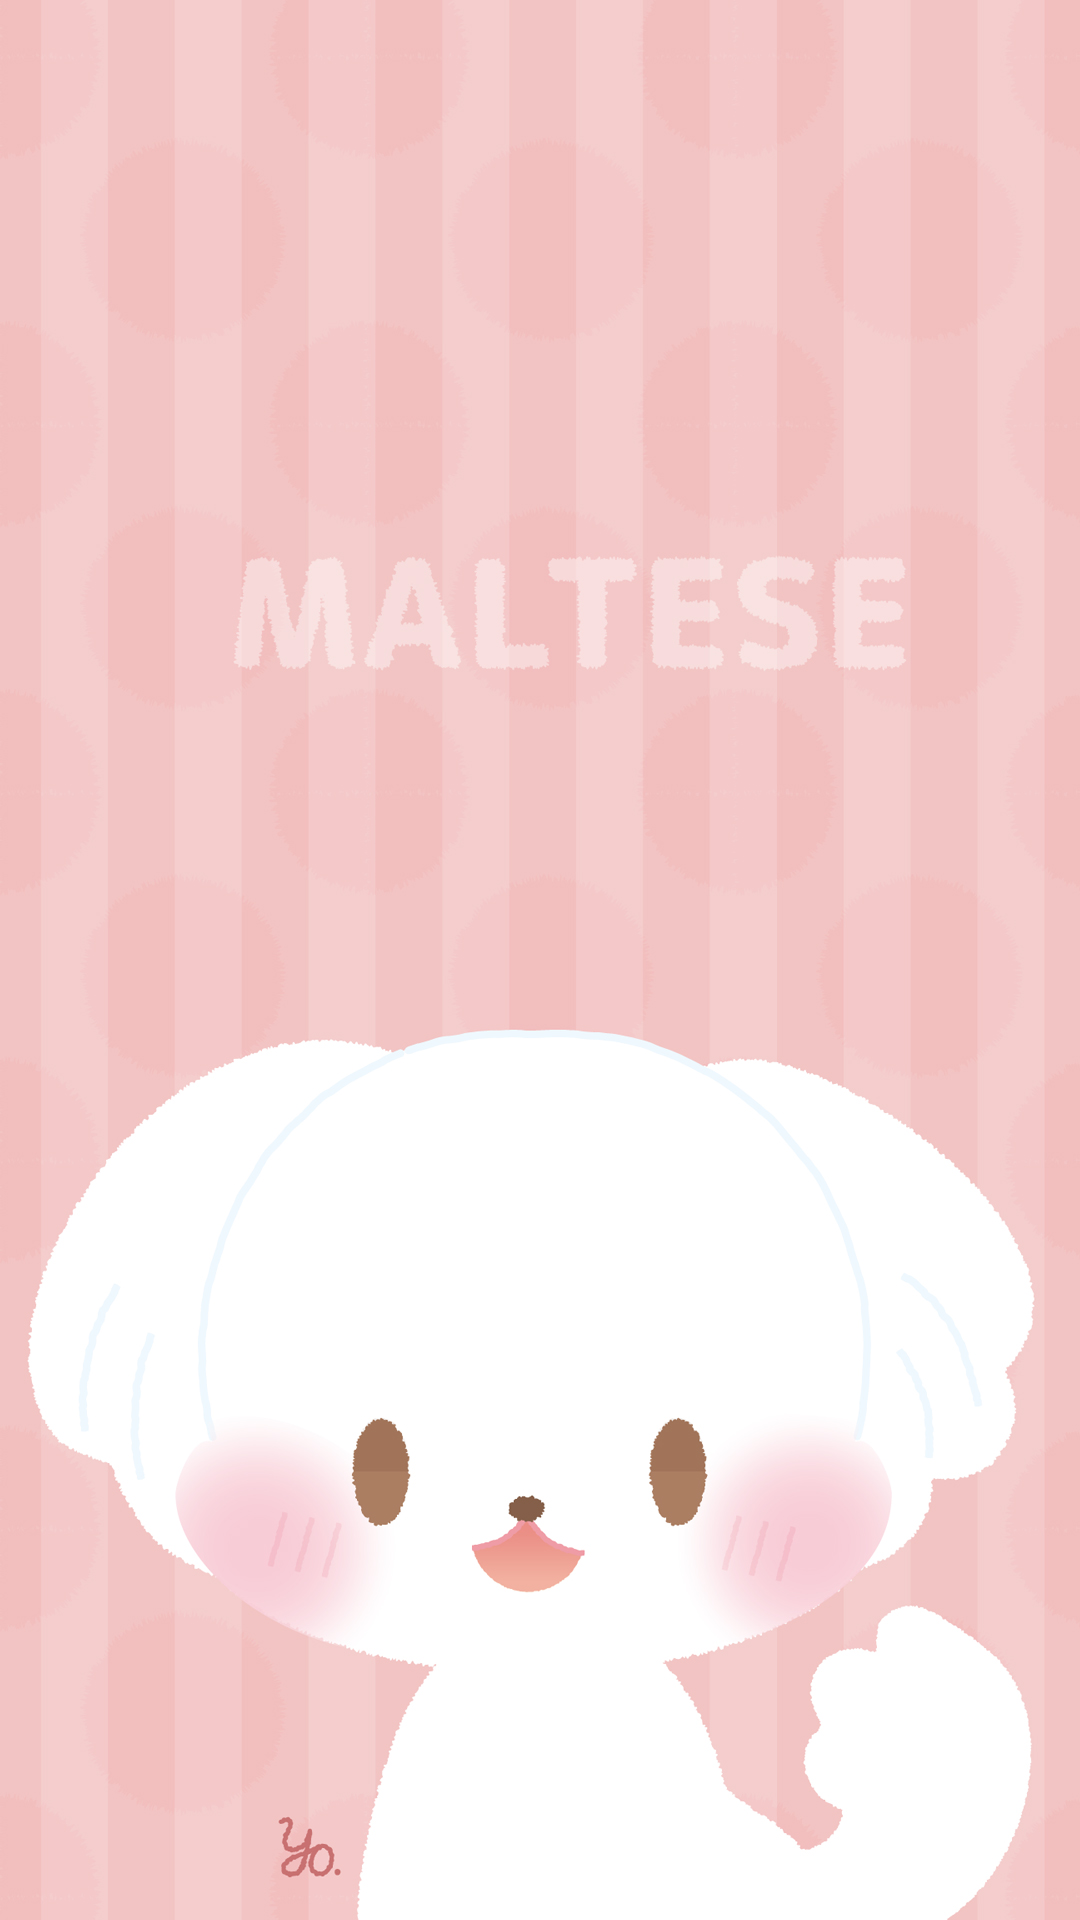 よう マルチーズの壁紙を作ったのでよろしければ個人の範囲でお使いください マルチーズ 壁紙 Maltese Wallpaper Dog